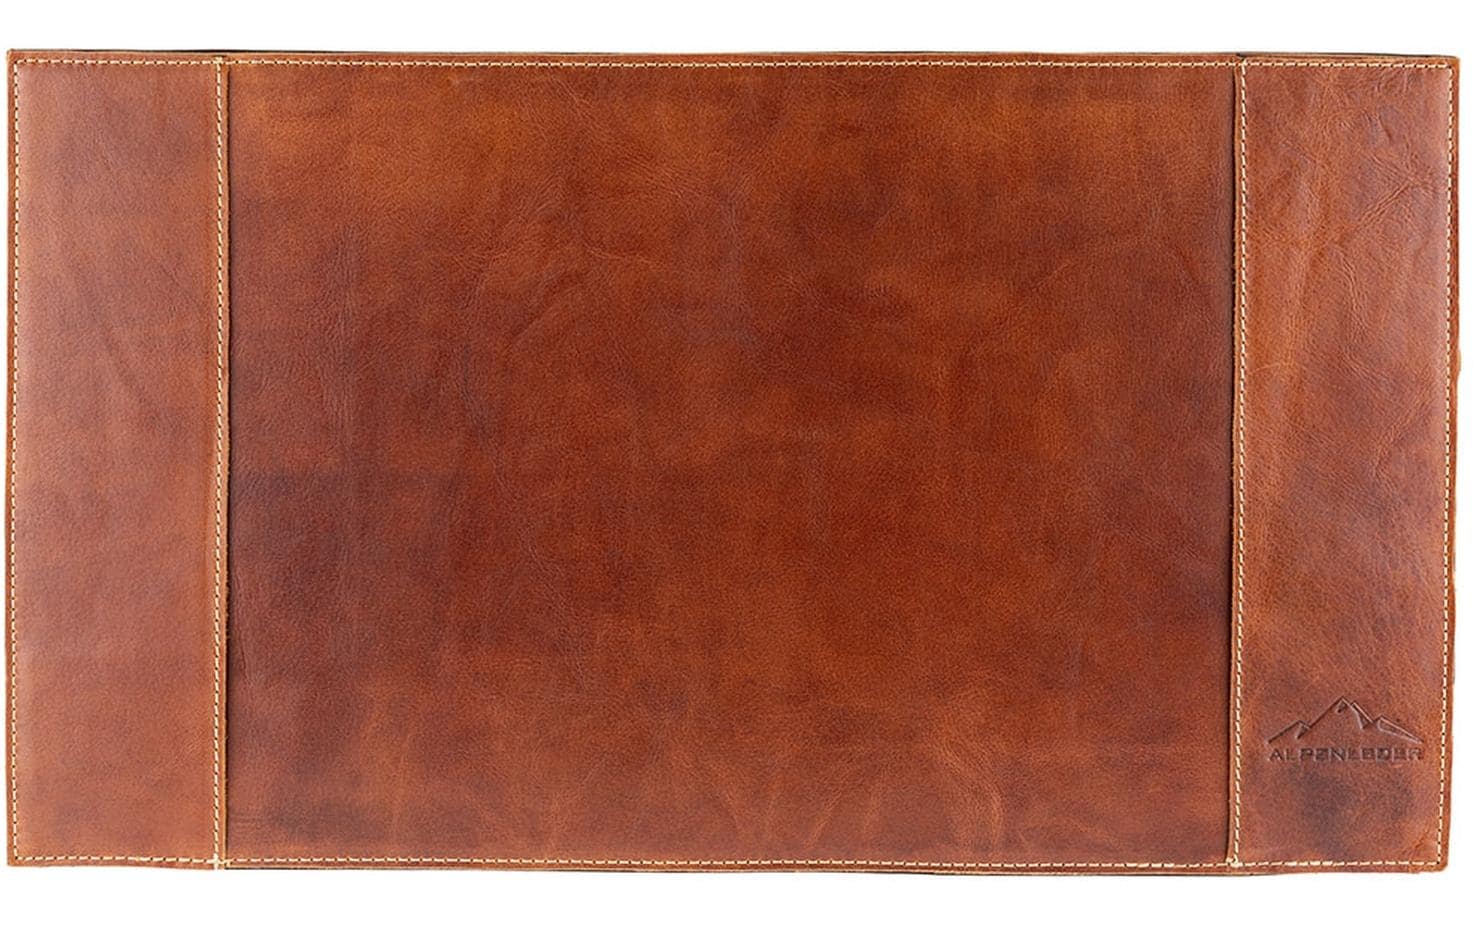 Alpenleder Schreibunterlage Piemont 51.5 x 29 cm, Cognac